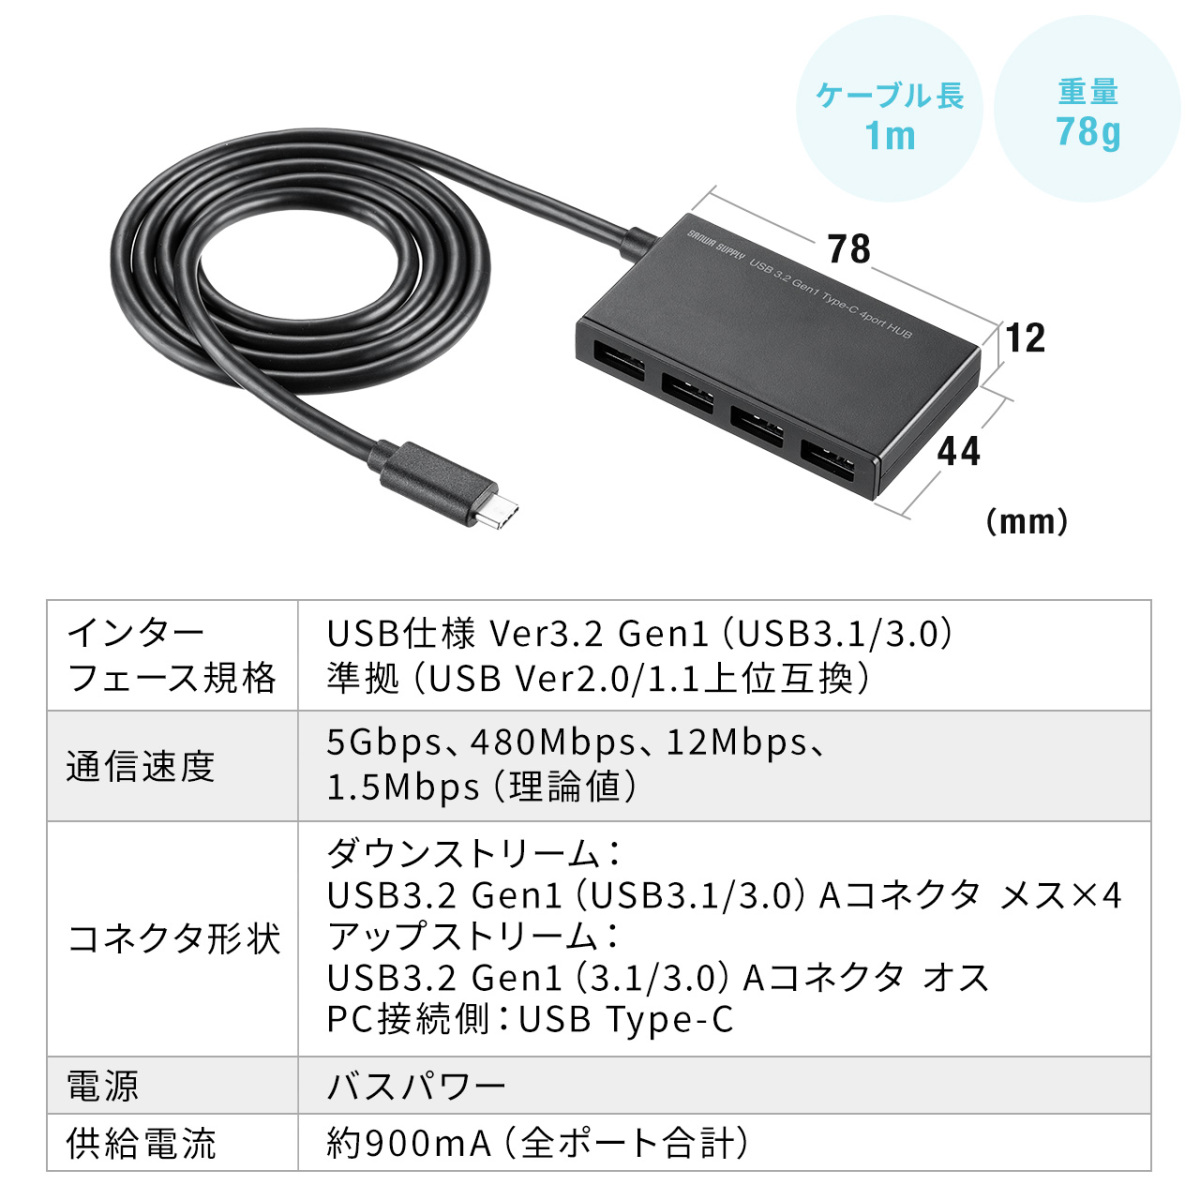 超新作】USBハブ 4ポート Type-C 薄型 5Gbps 軽量 データ転送 コンパクト USBポート 増設 高速 バスパワー ケーブル長1m  USBハブ